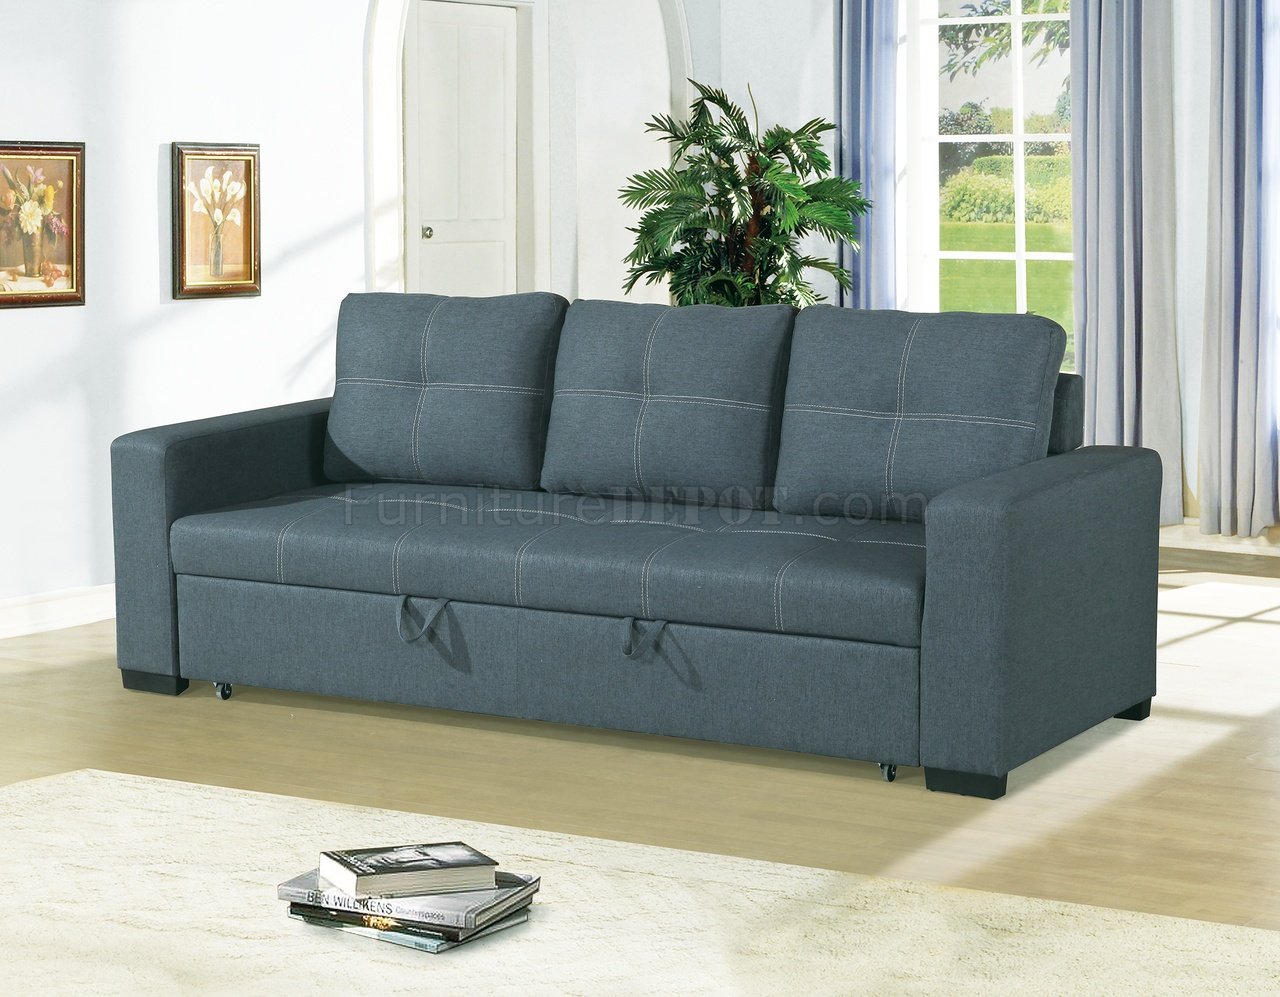 denna fabric fiber sofa bed